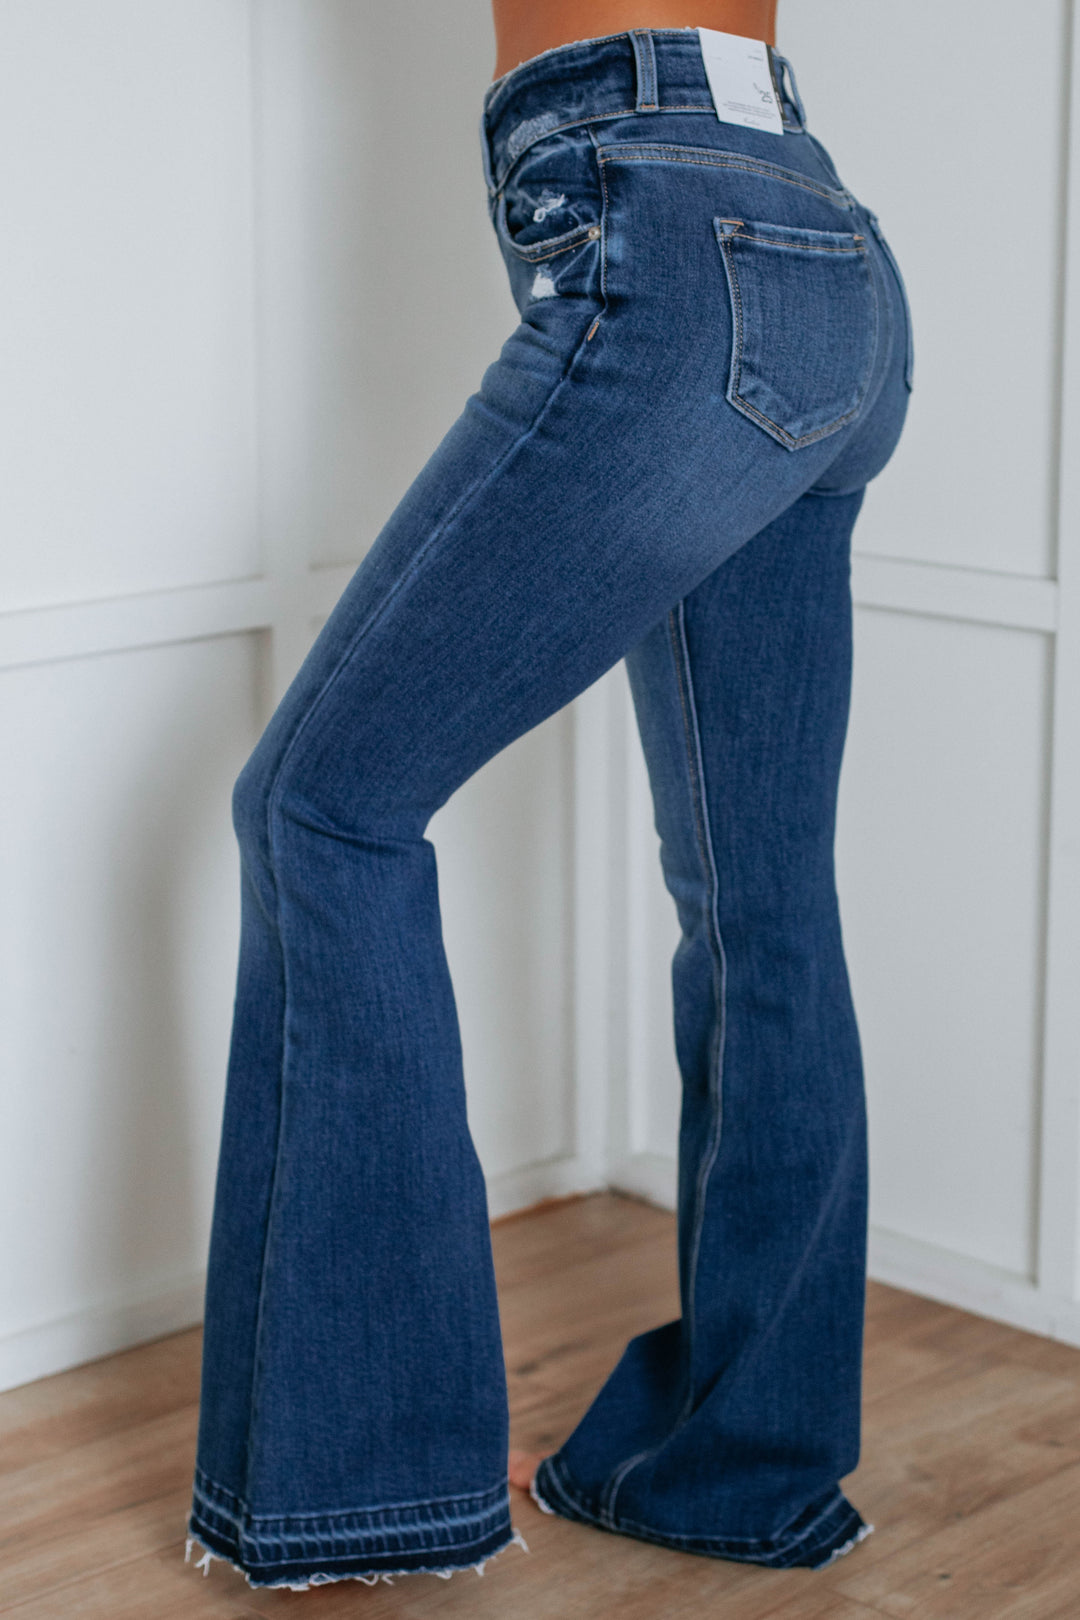 Ellison KanCan Flare Jeans